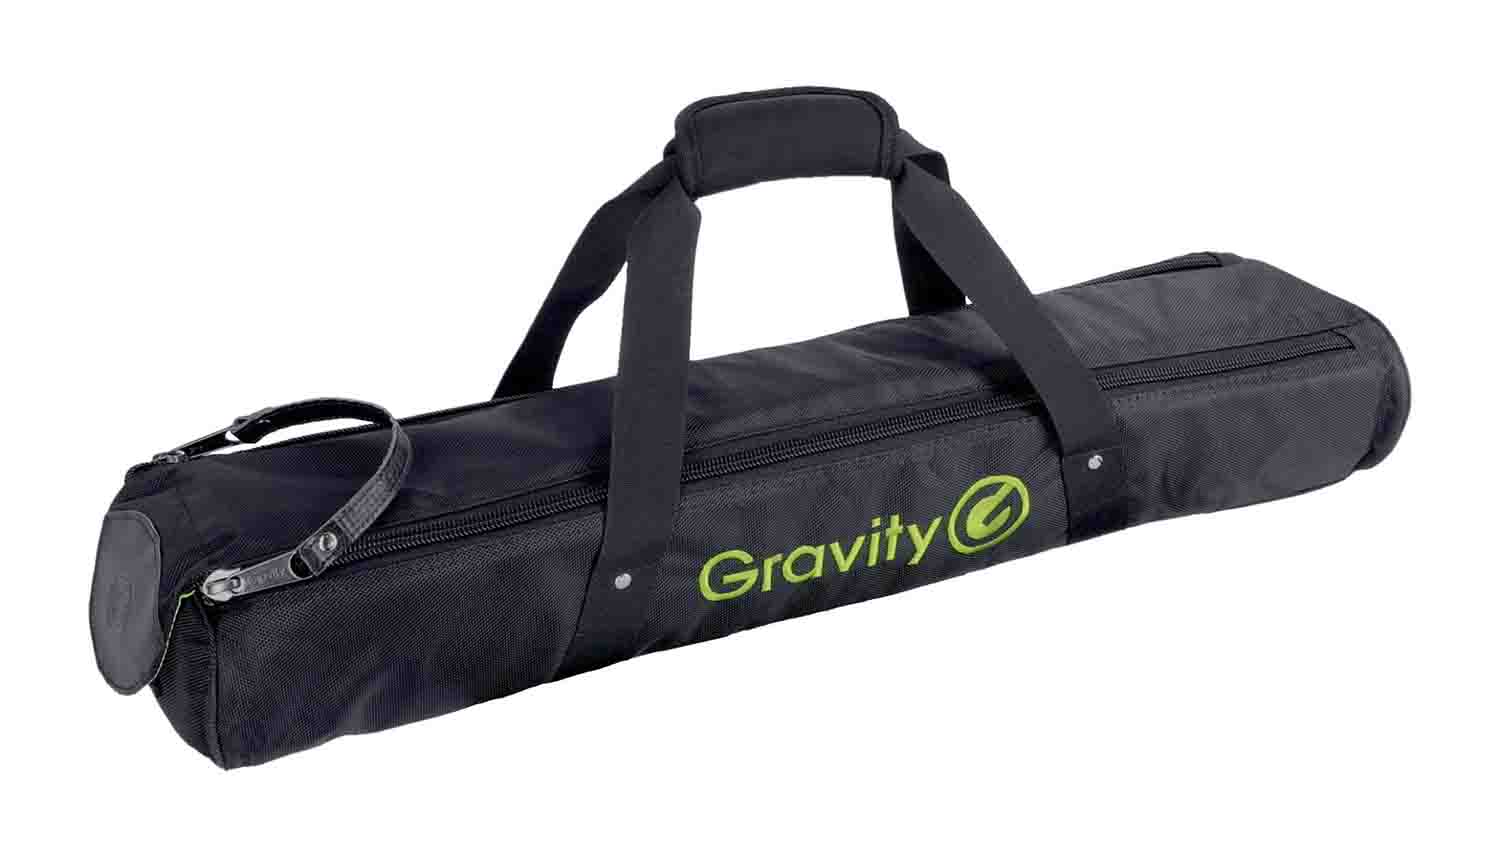 B-Stock: Gravity BG SS 2 T B Transport Bag for Two Traveler Speaker Stands by Gravity